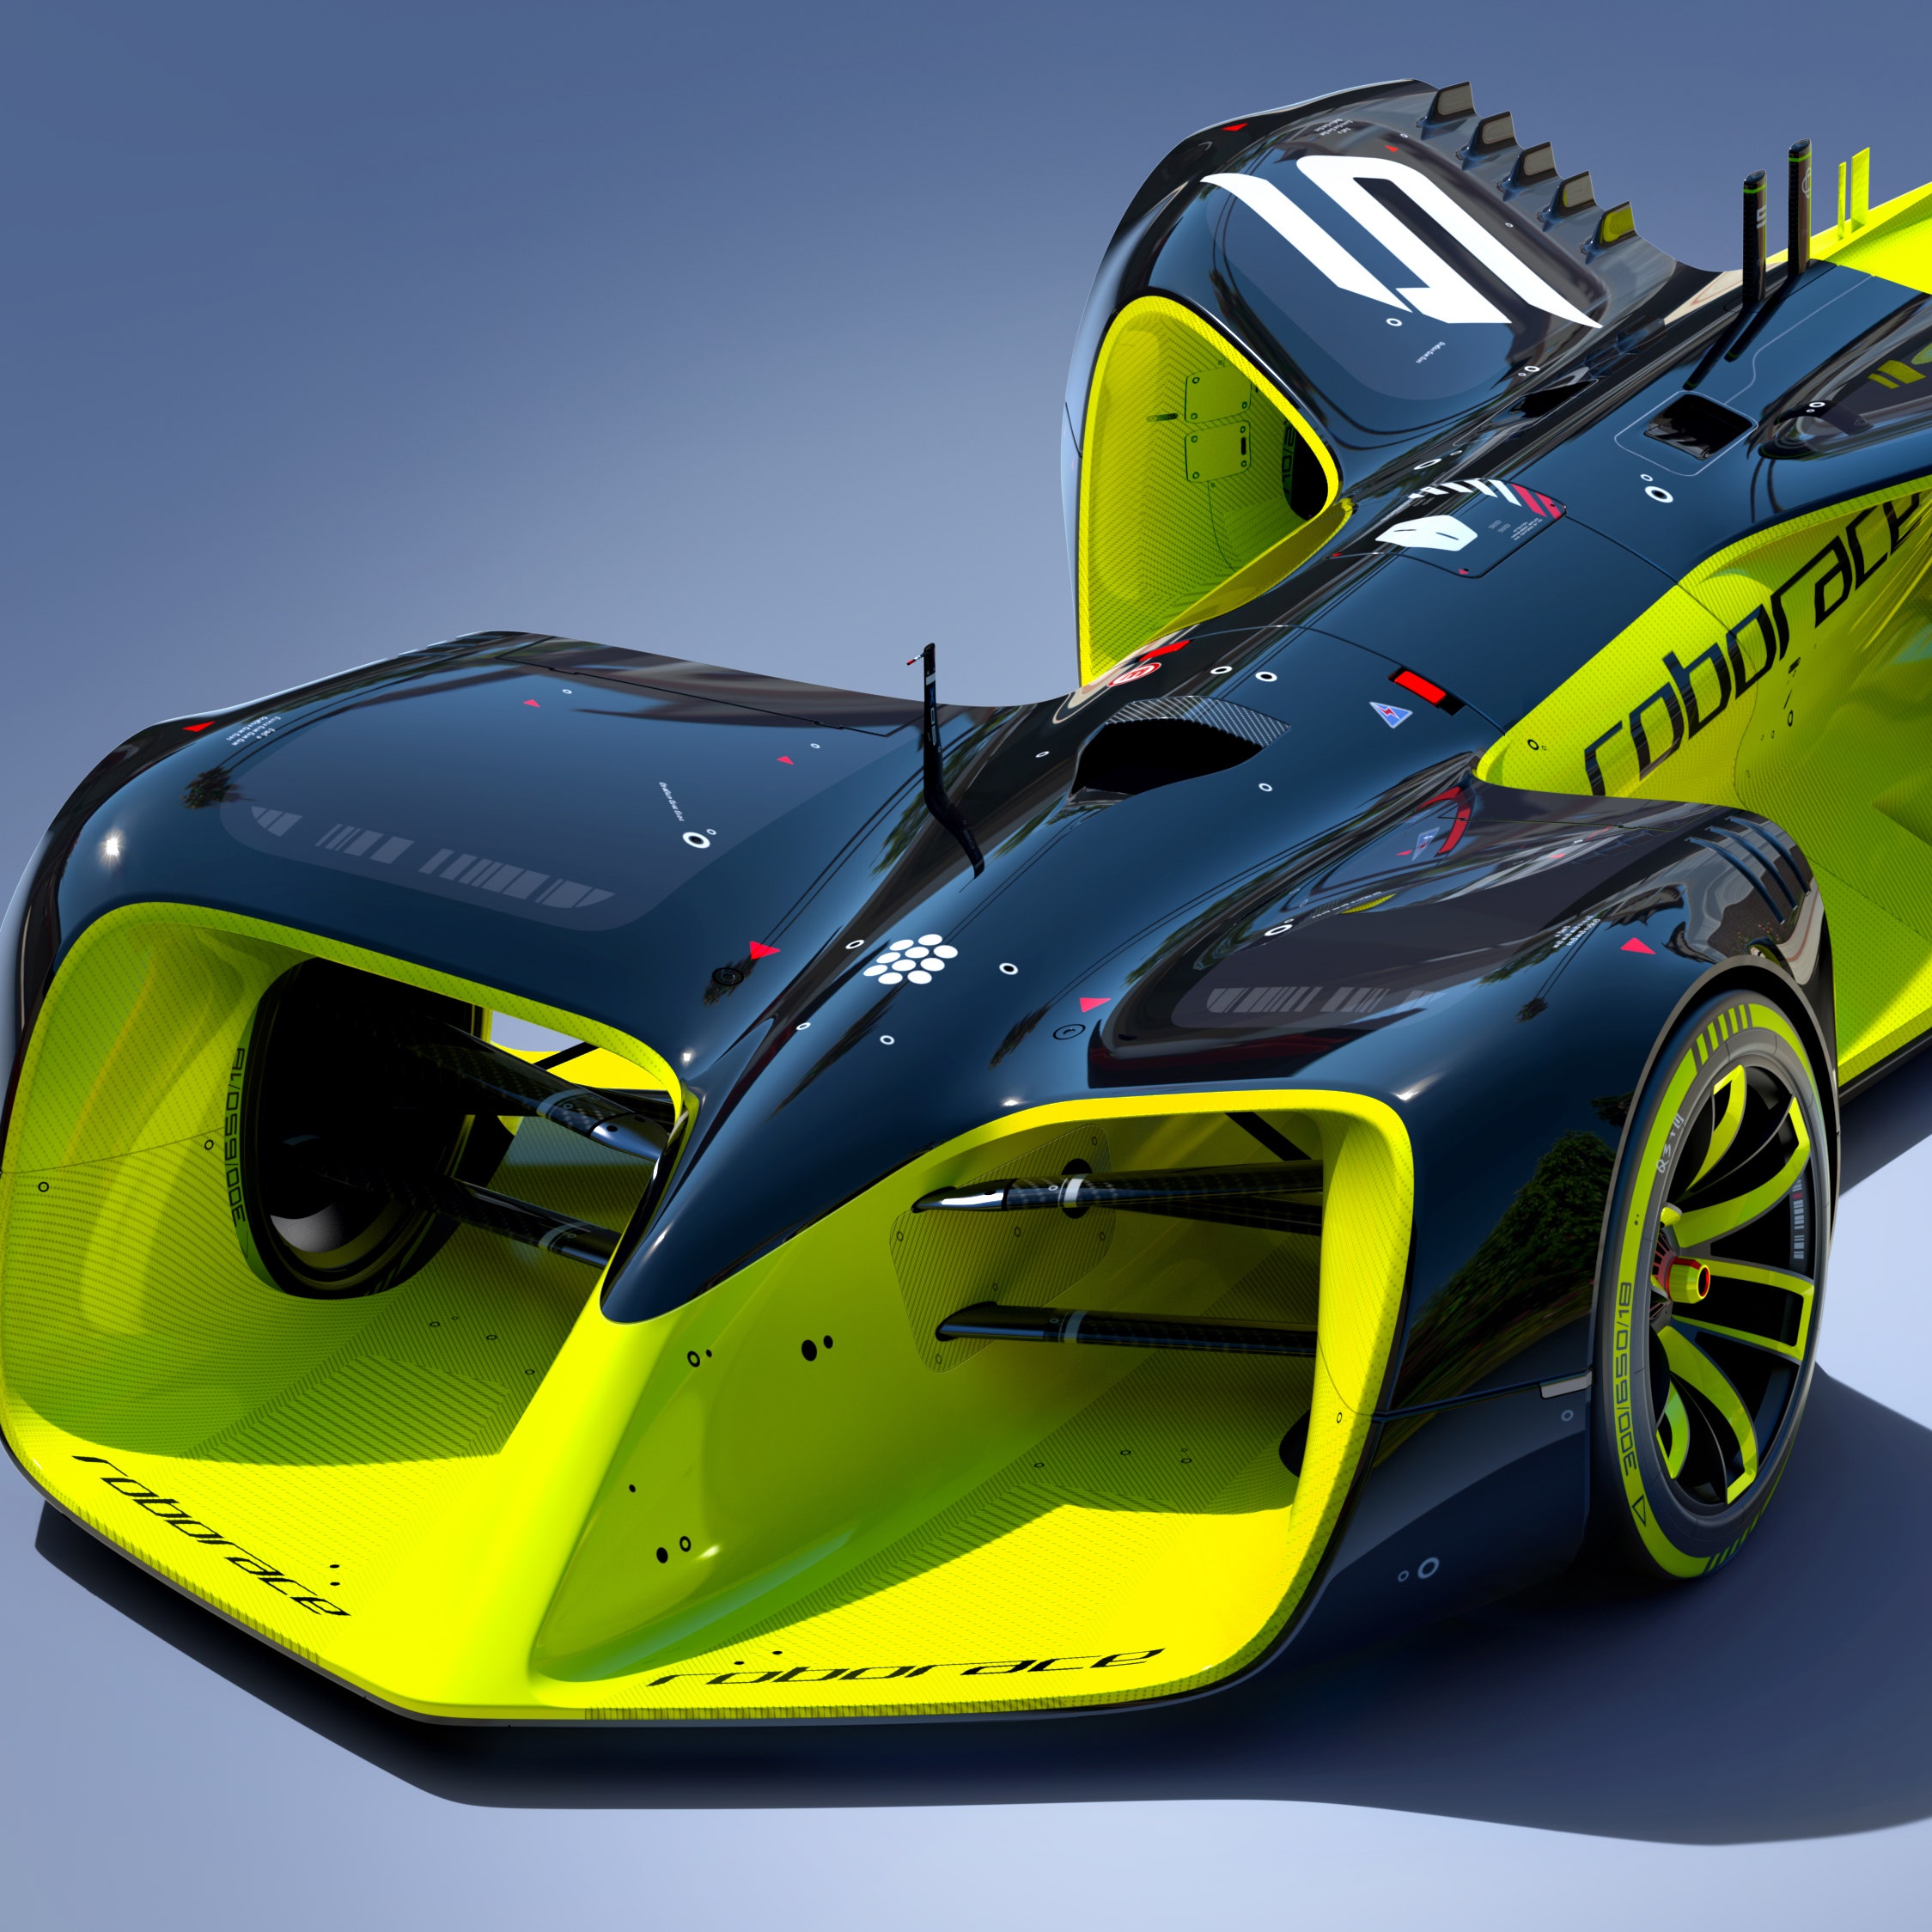 TRON Legacy Designer Unveils New Autonomous Formula E Race Car